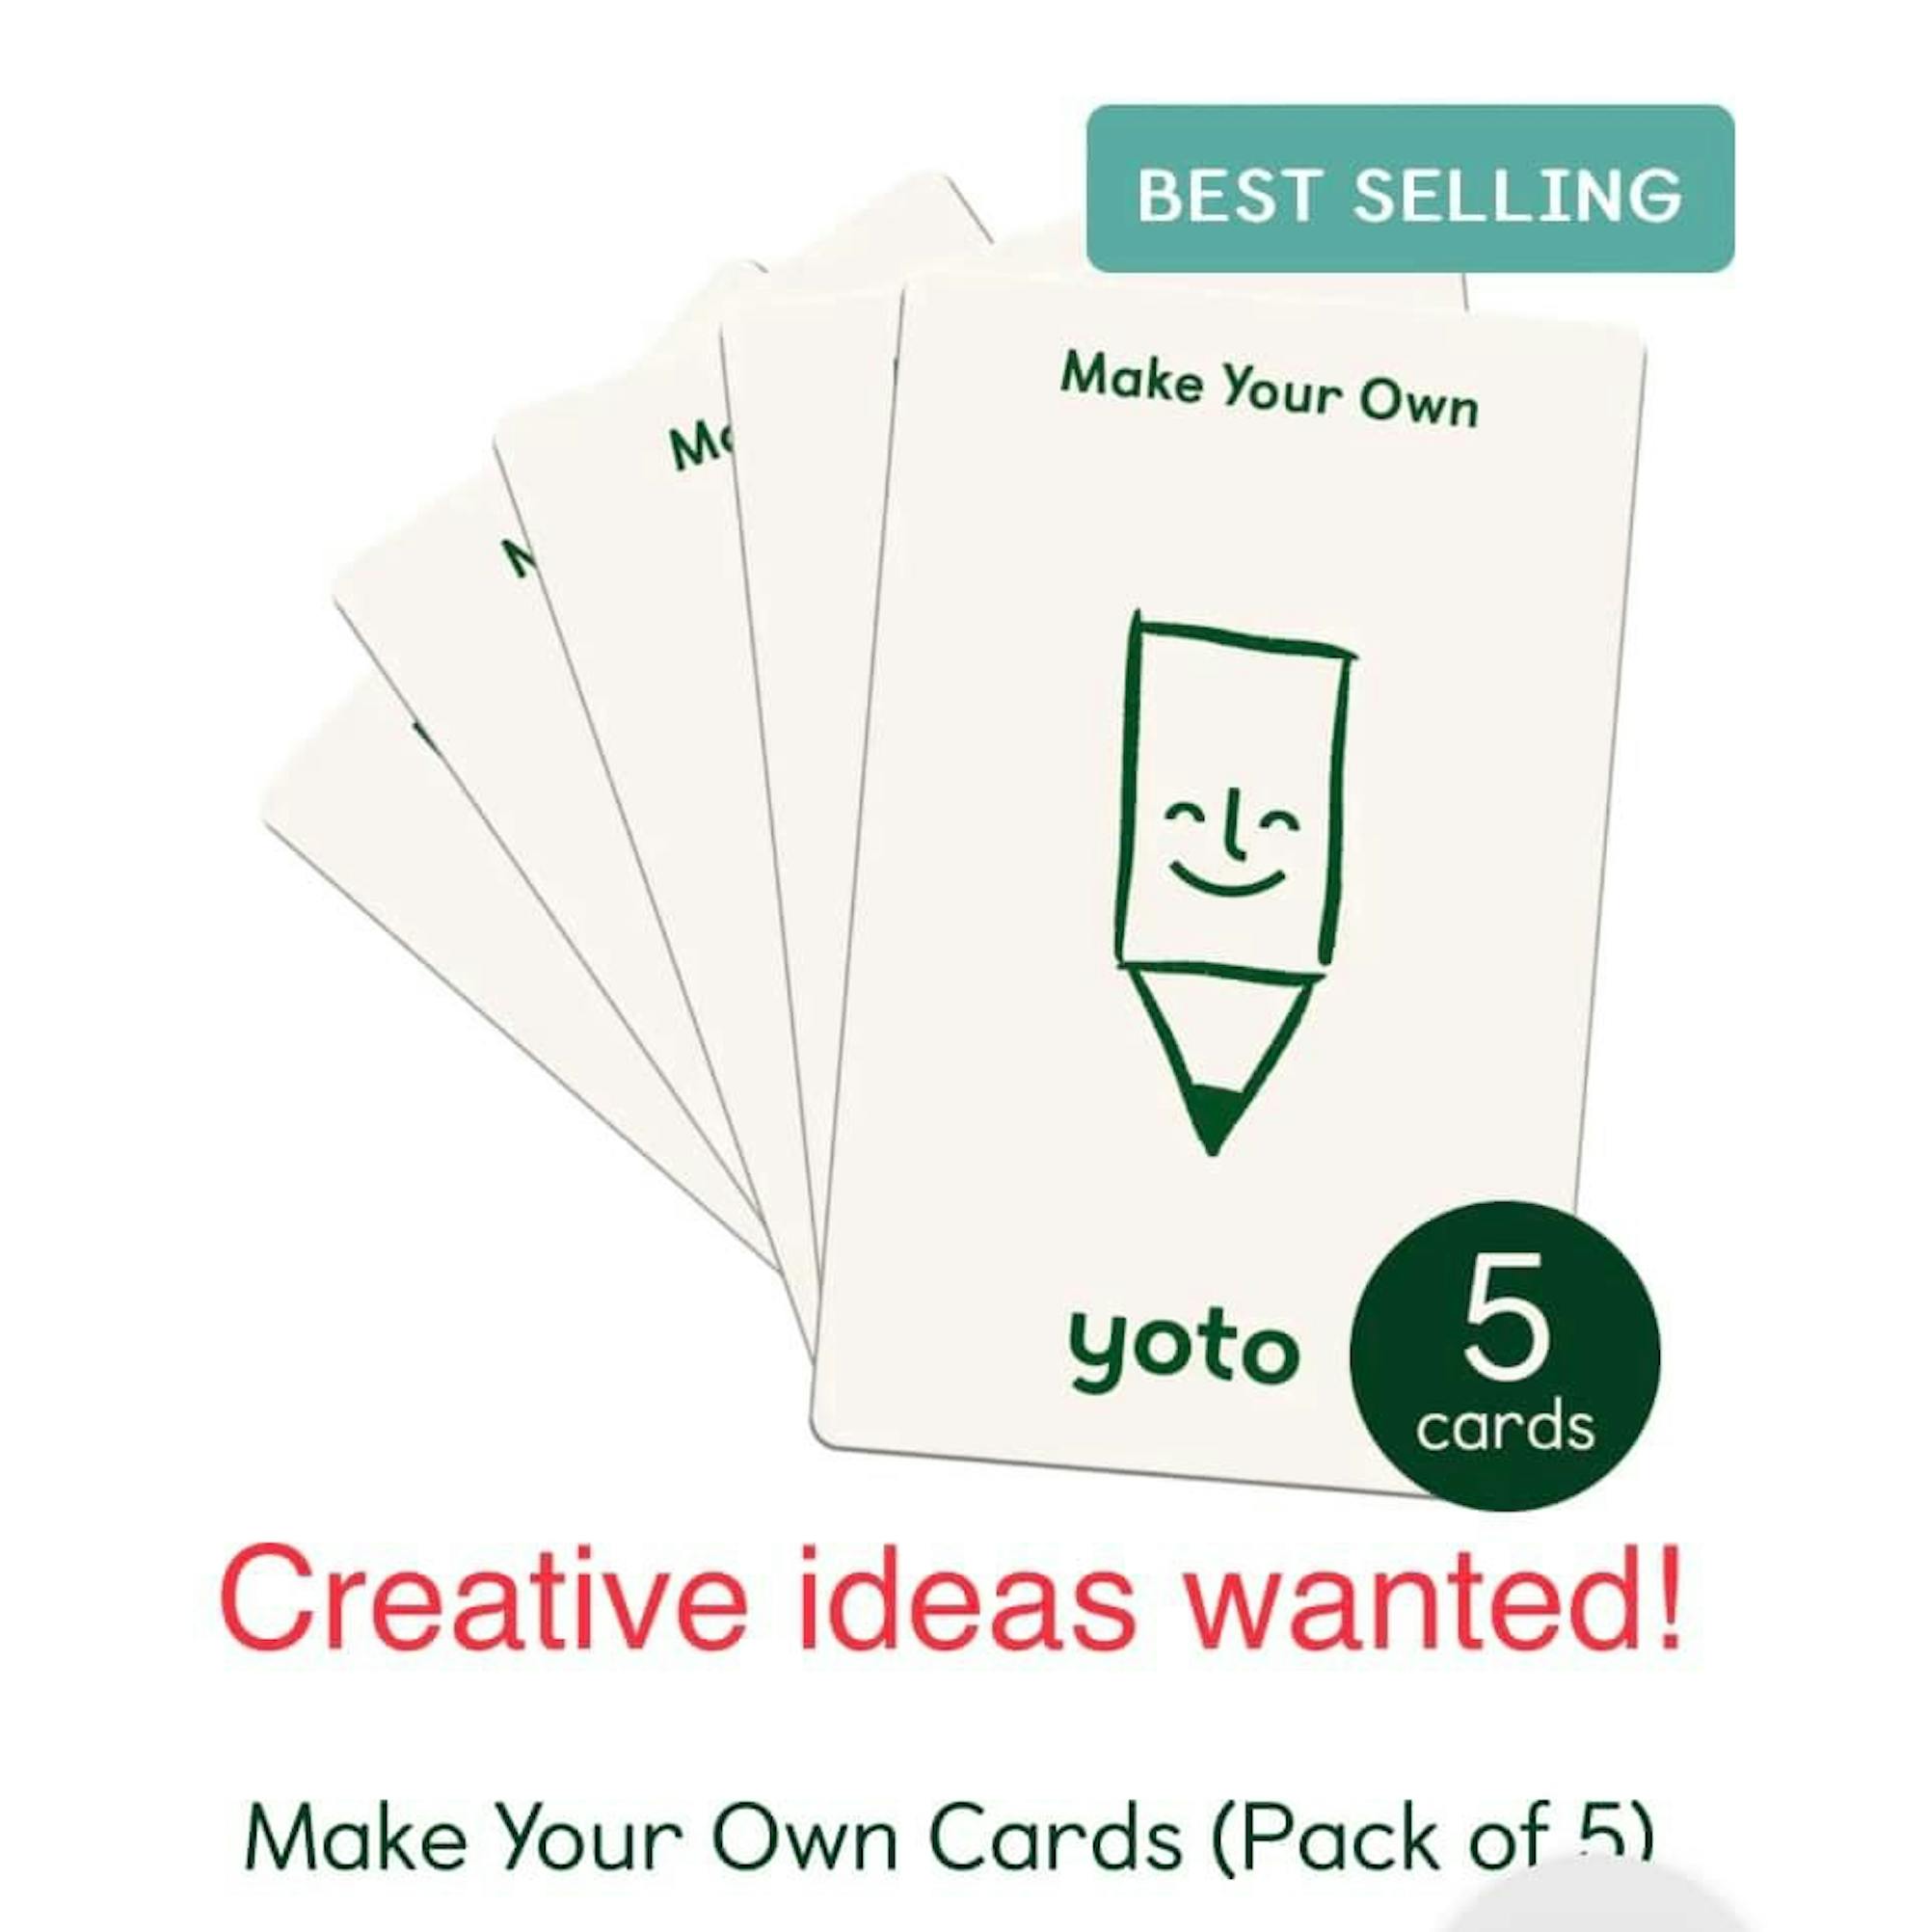 MYO Card Ideas thread - add yours!